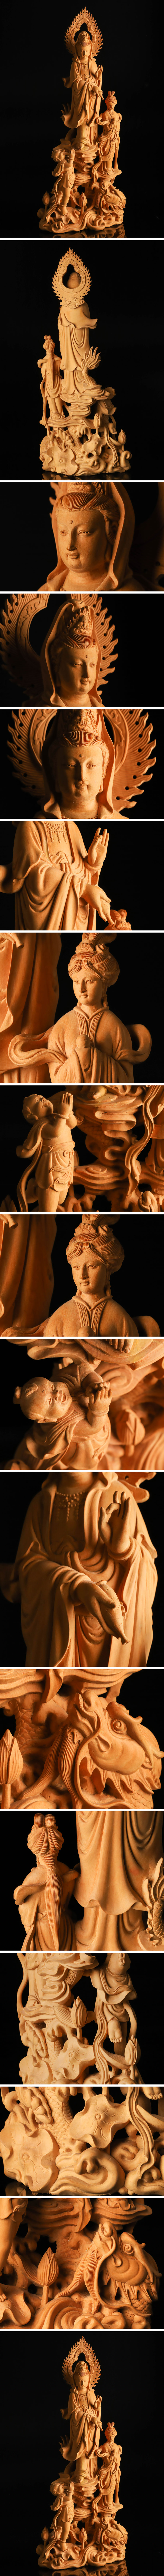 新作本物保証仏教美術 黄楊木彫 龍上観音像 高47cm TF353 仏像